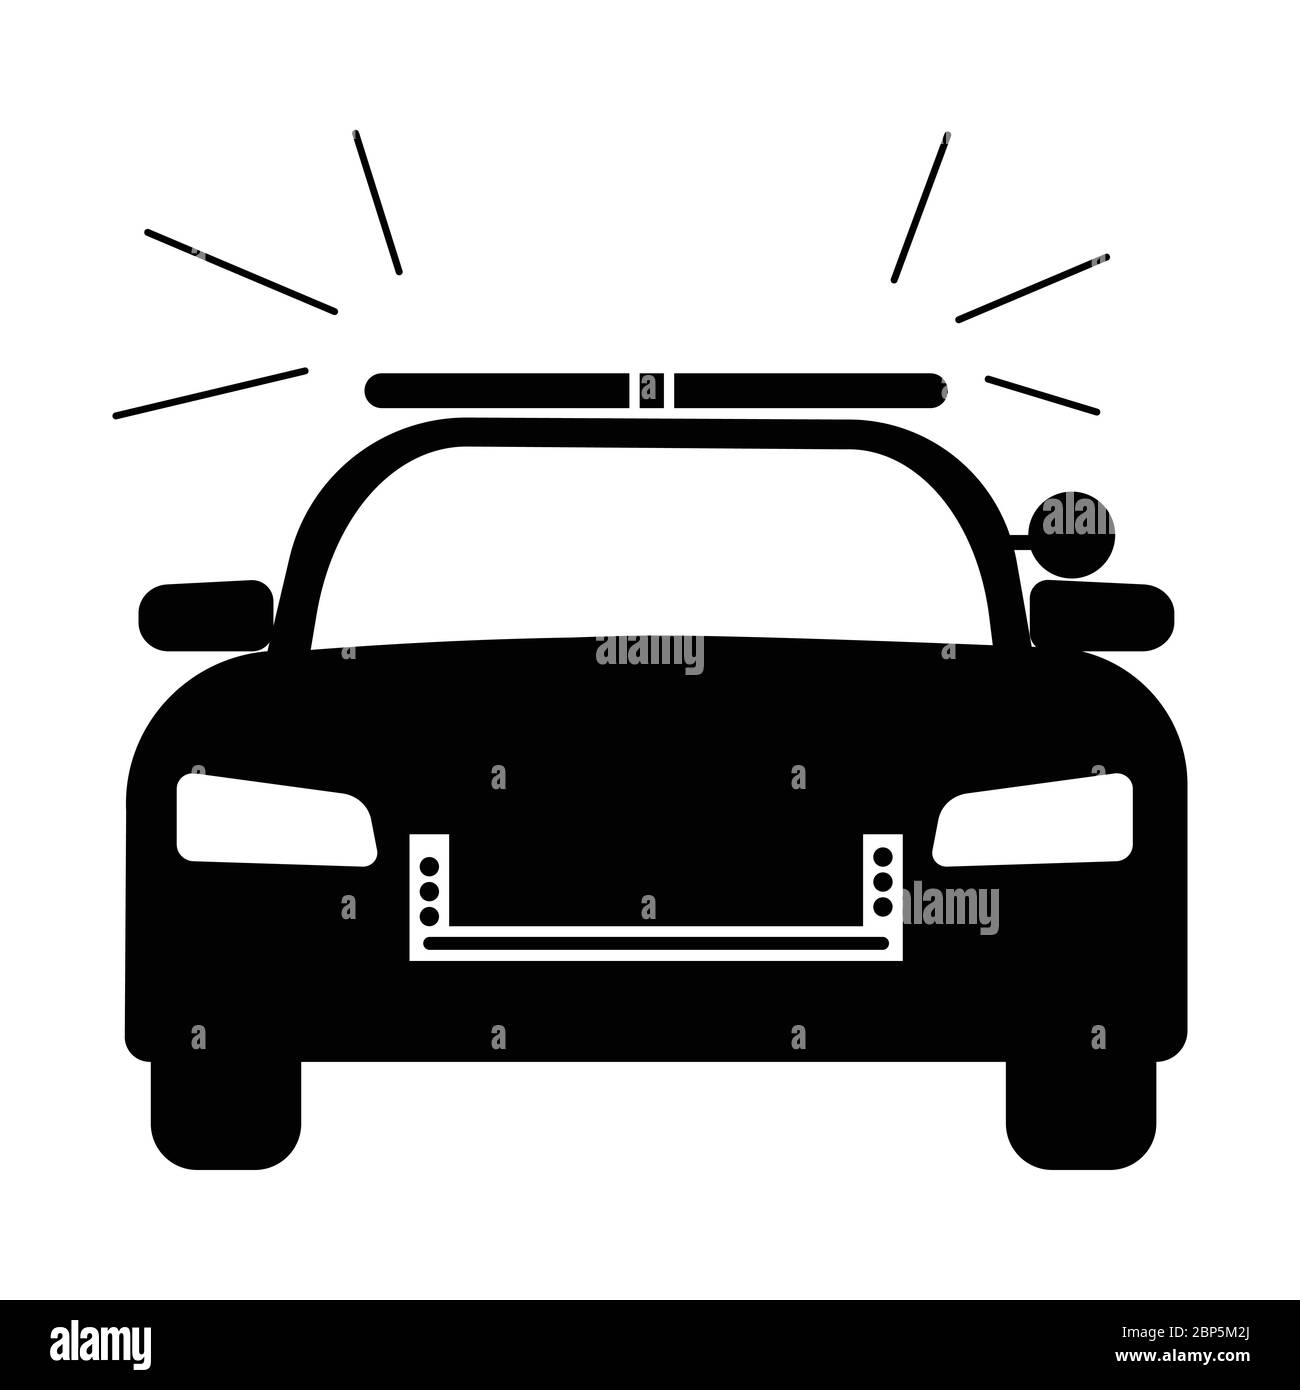 Polizei Cop Auto mit Sirene Vorderansicht. Einfache schwarz-weiß-Abbildung zeigt Polizei-Notfallhilfe Fahrzeug Auto mit Blitz. EPS-Vektor Stock Vektor